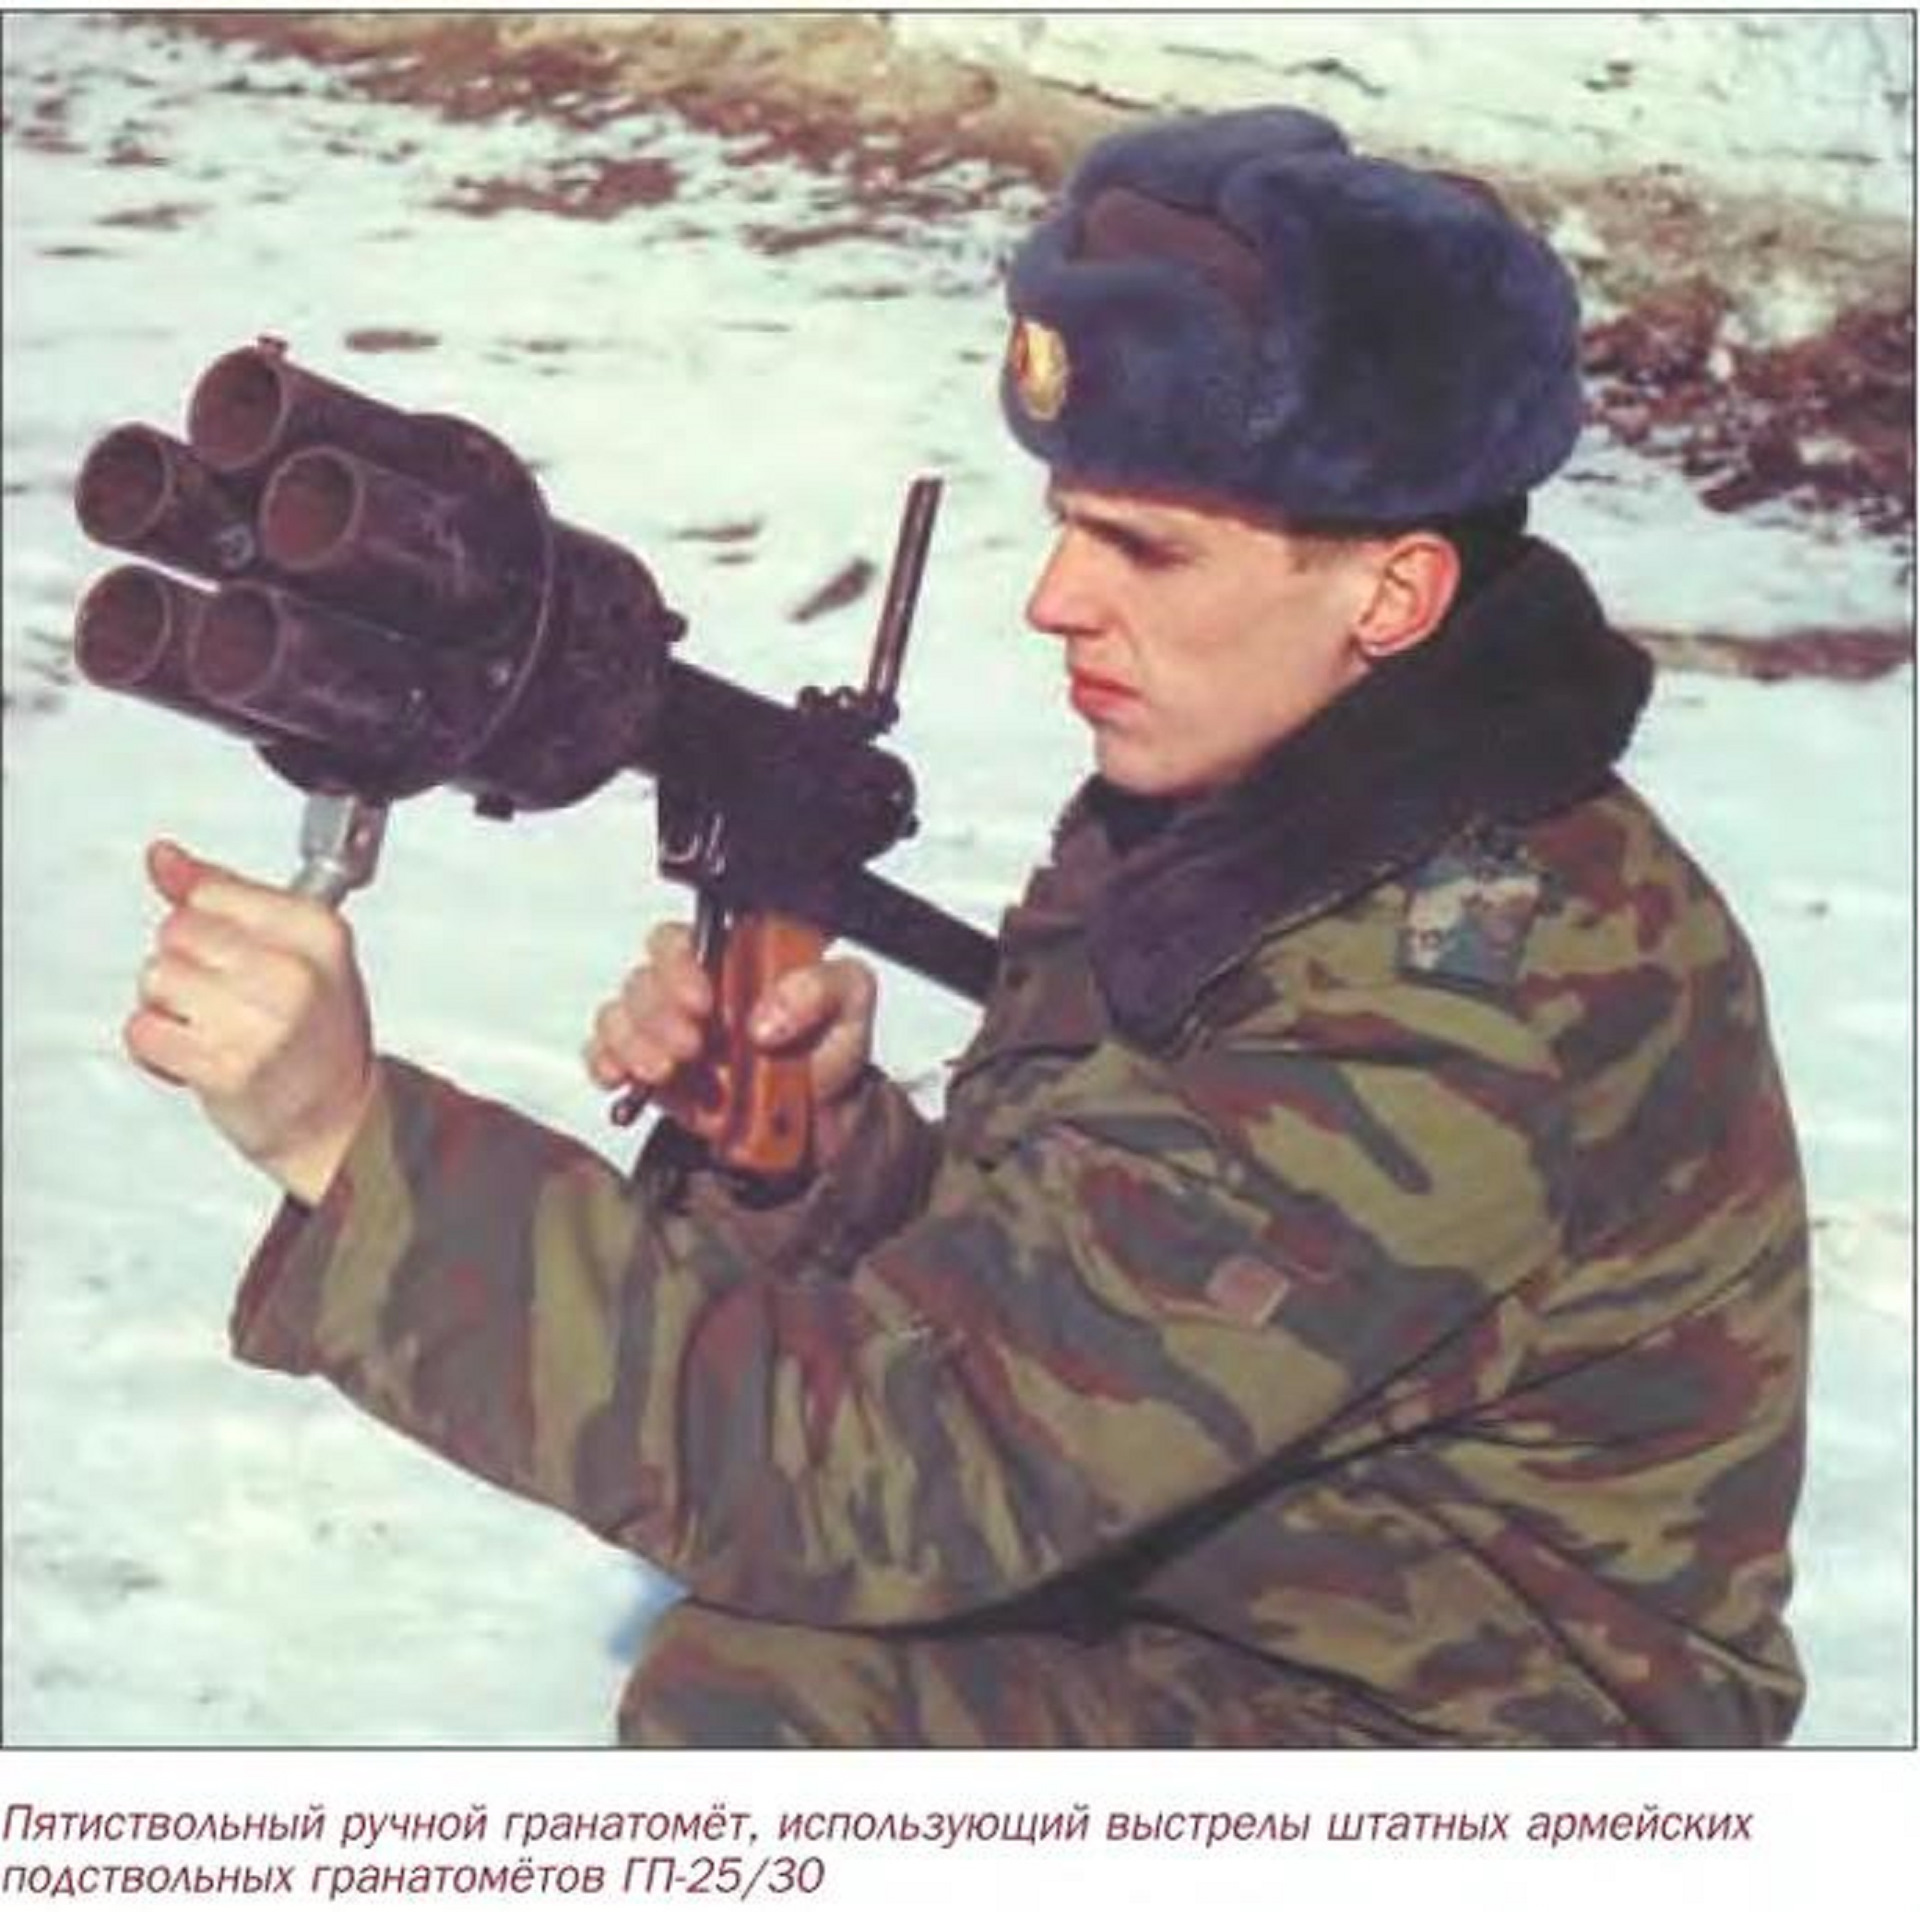 Использованный гранатомет. Гранатомет АГС В Чечне. Вог-17 гранатомёт. АГС-17 гранатомёт Чечня. РПГ 7 В Чечне.